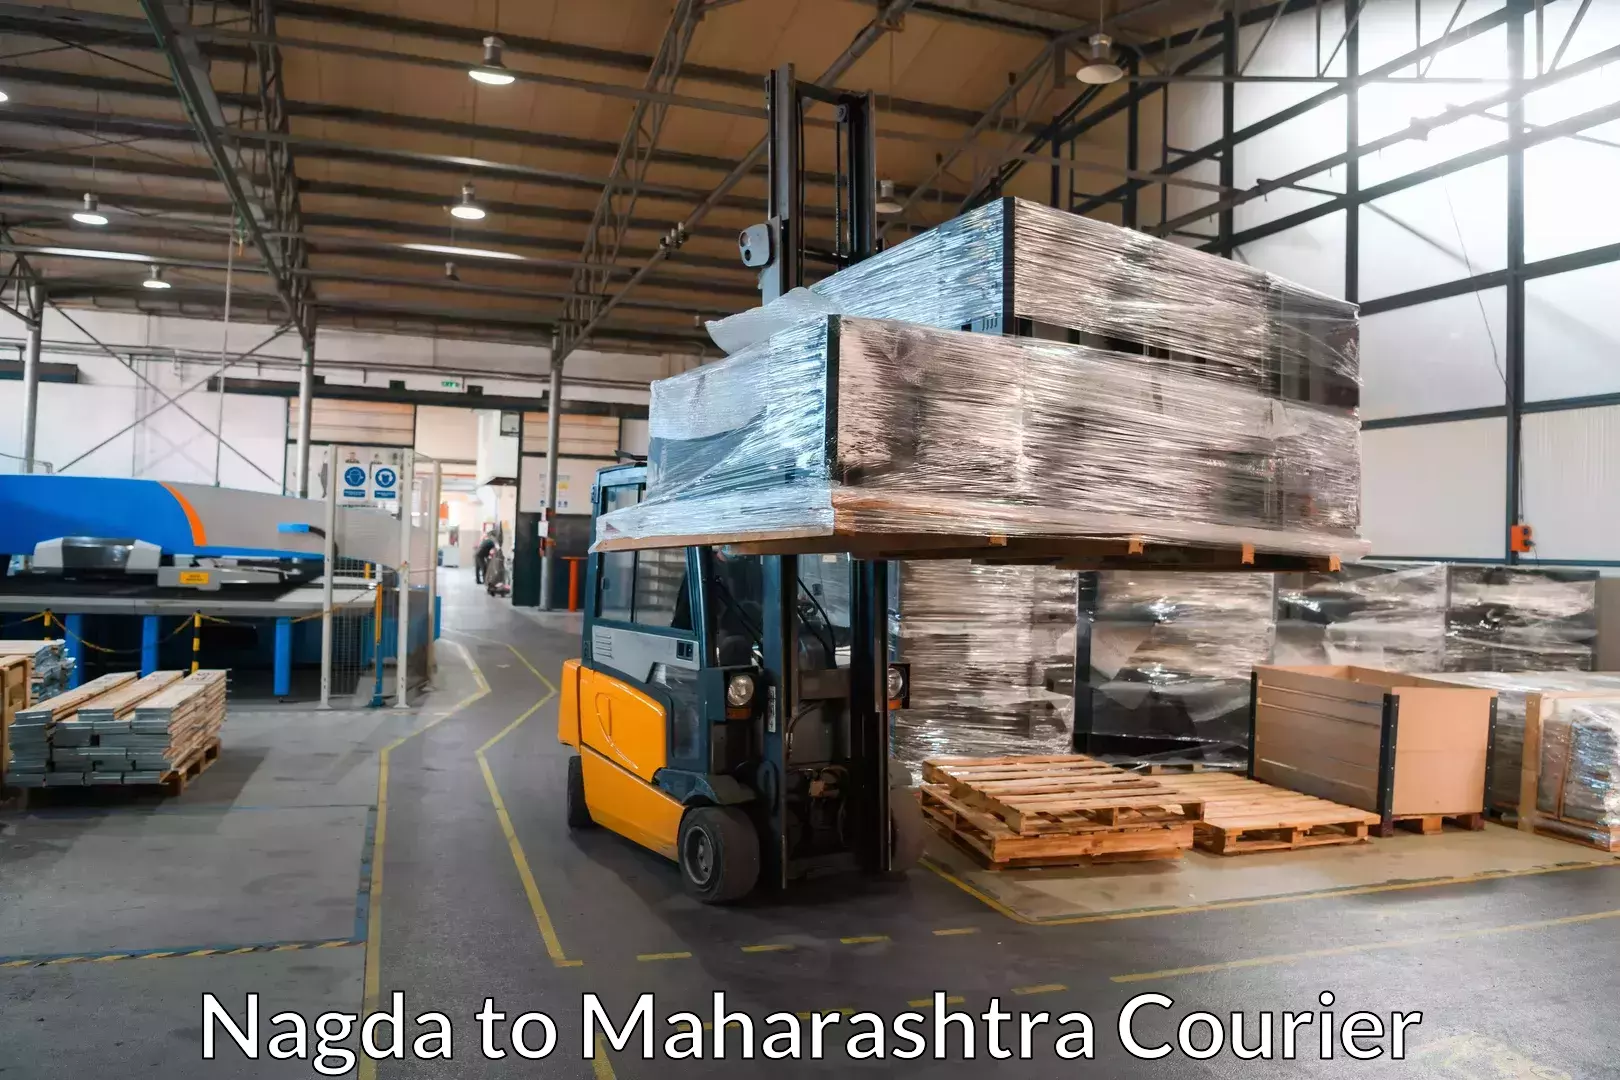 Furniture moving service in Nagda to Shrirampur